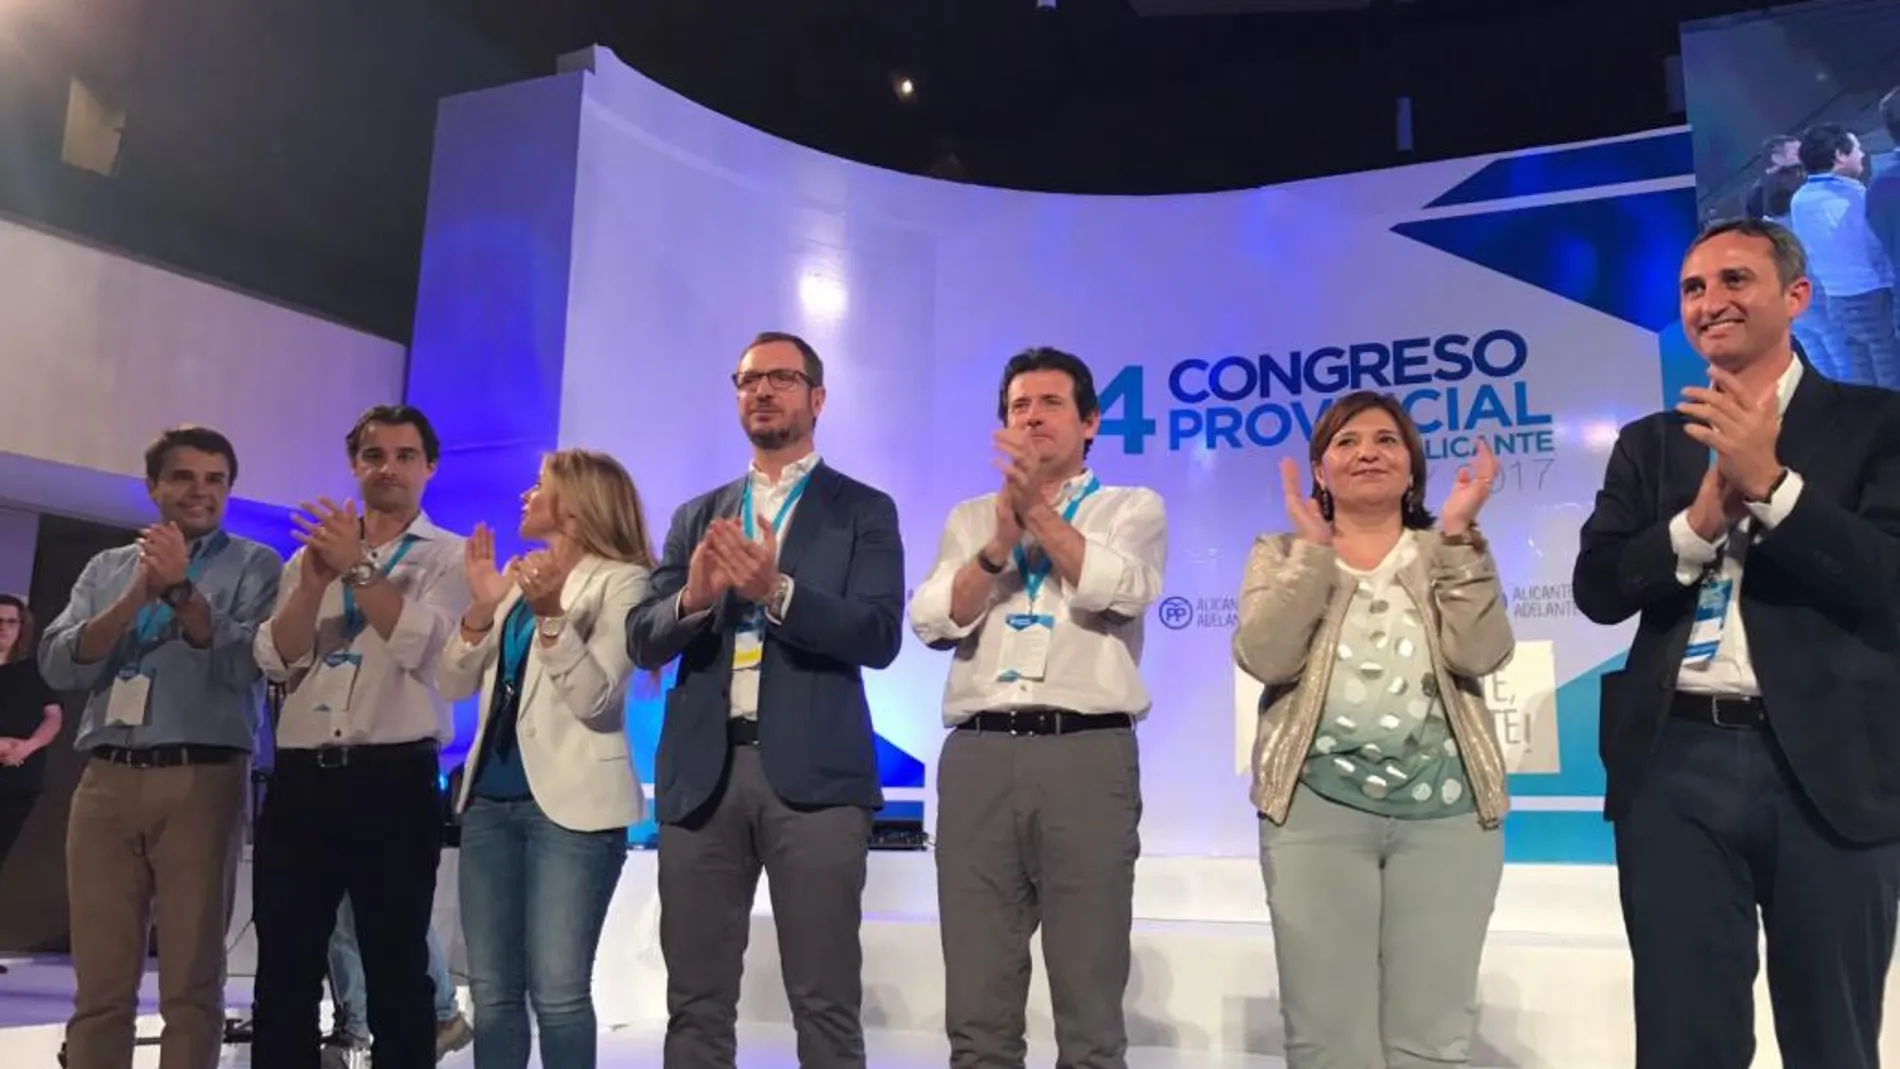 Maroto, Císcar, Bonig y Sánchez, ayer en el congreso provincial del PP de Alicante